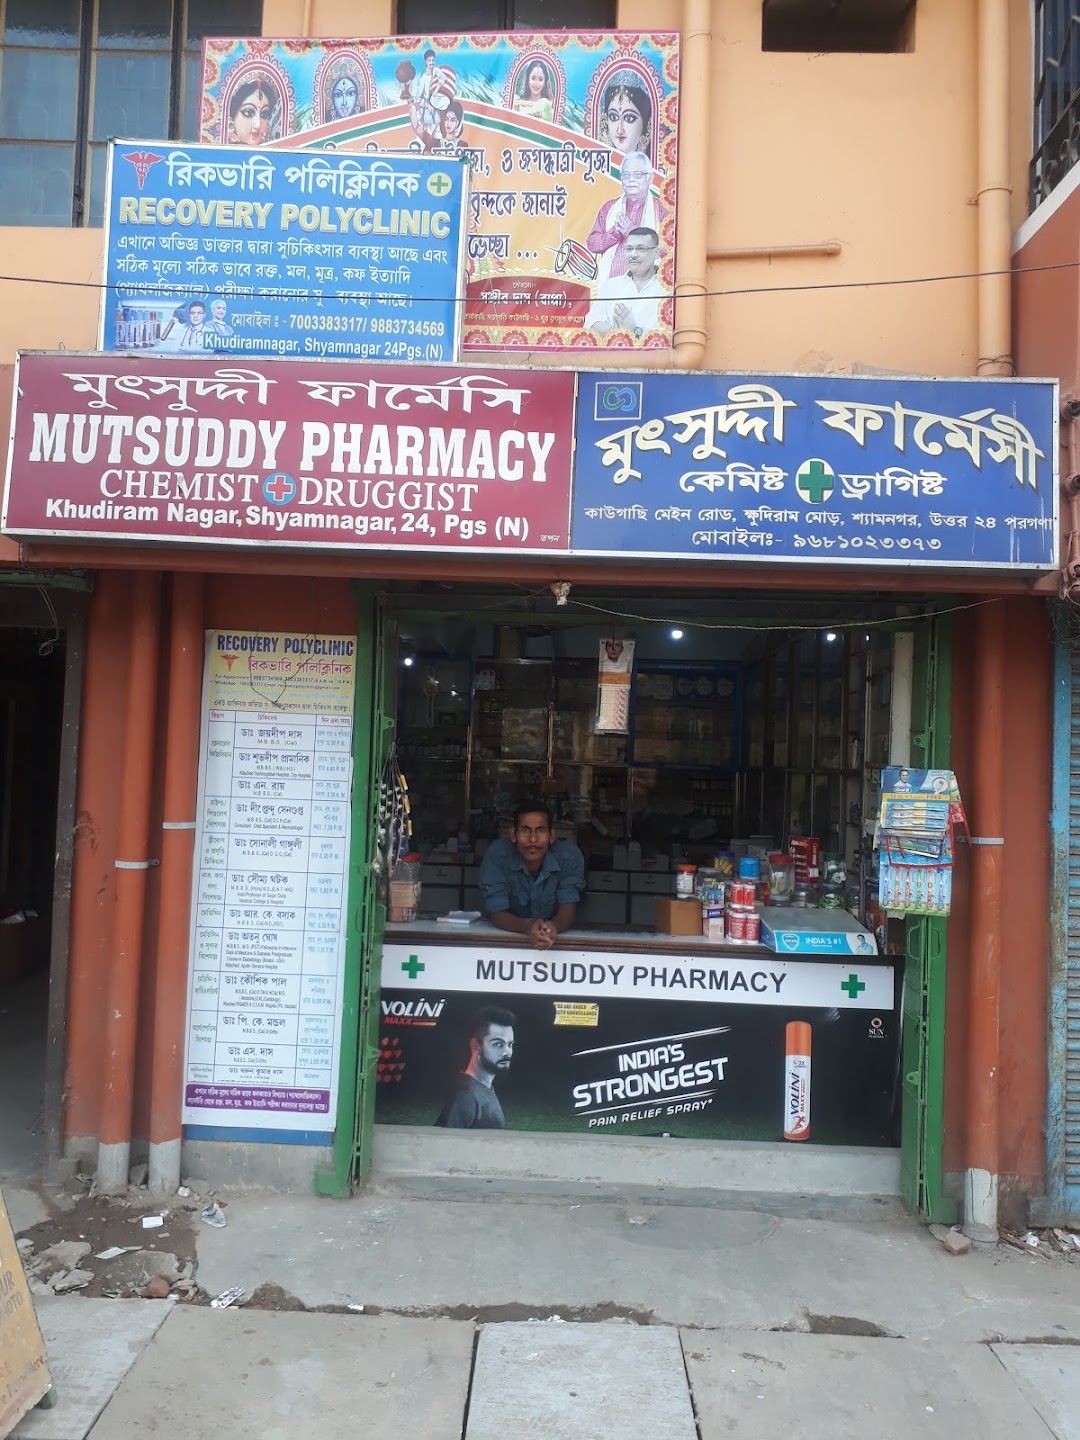 Mutsuddy pharmacy